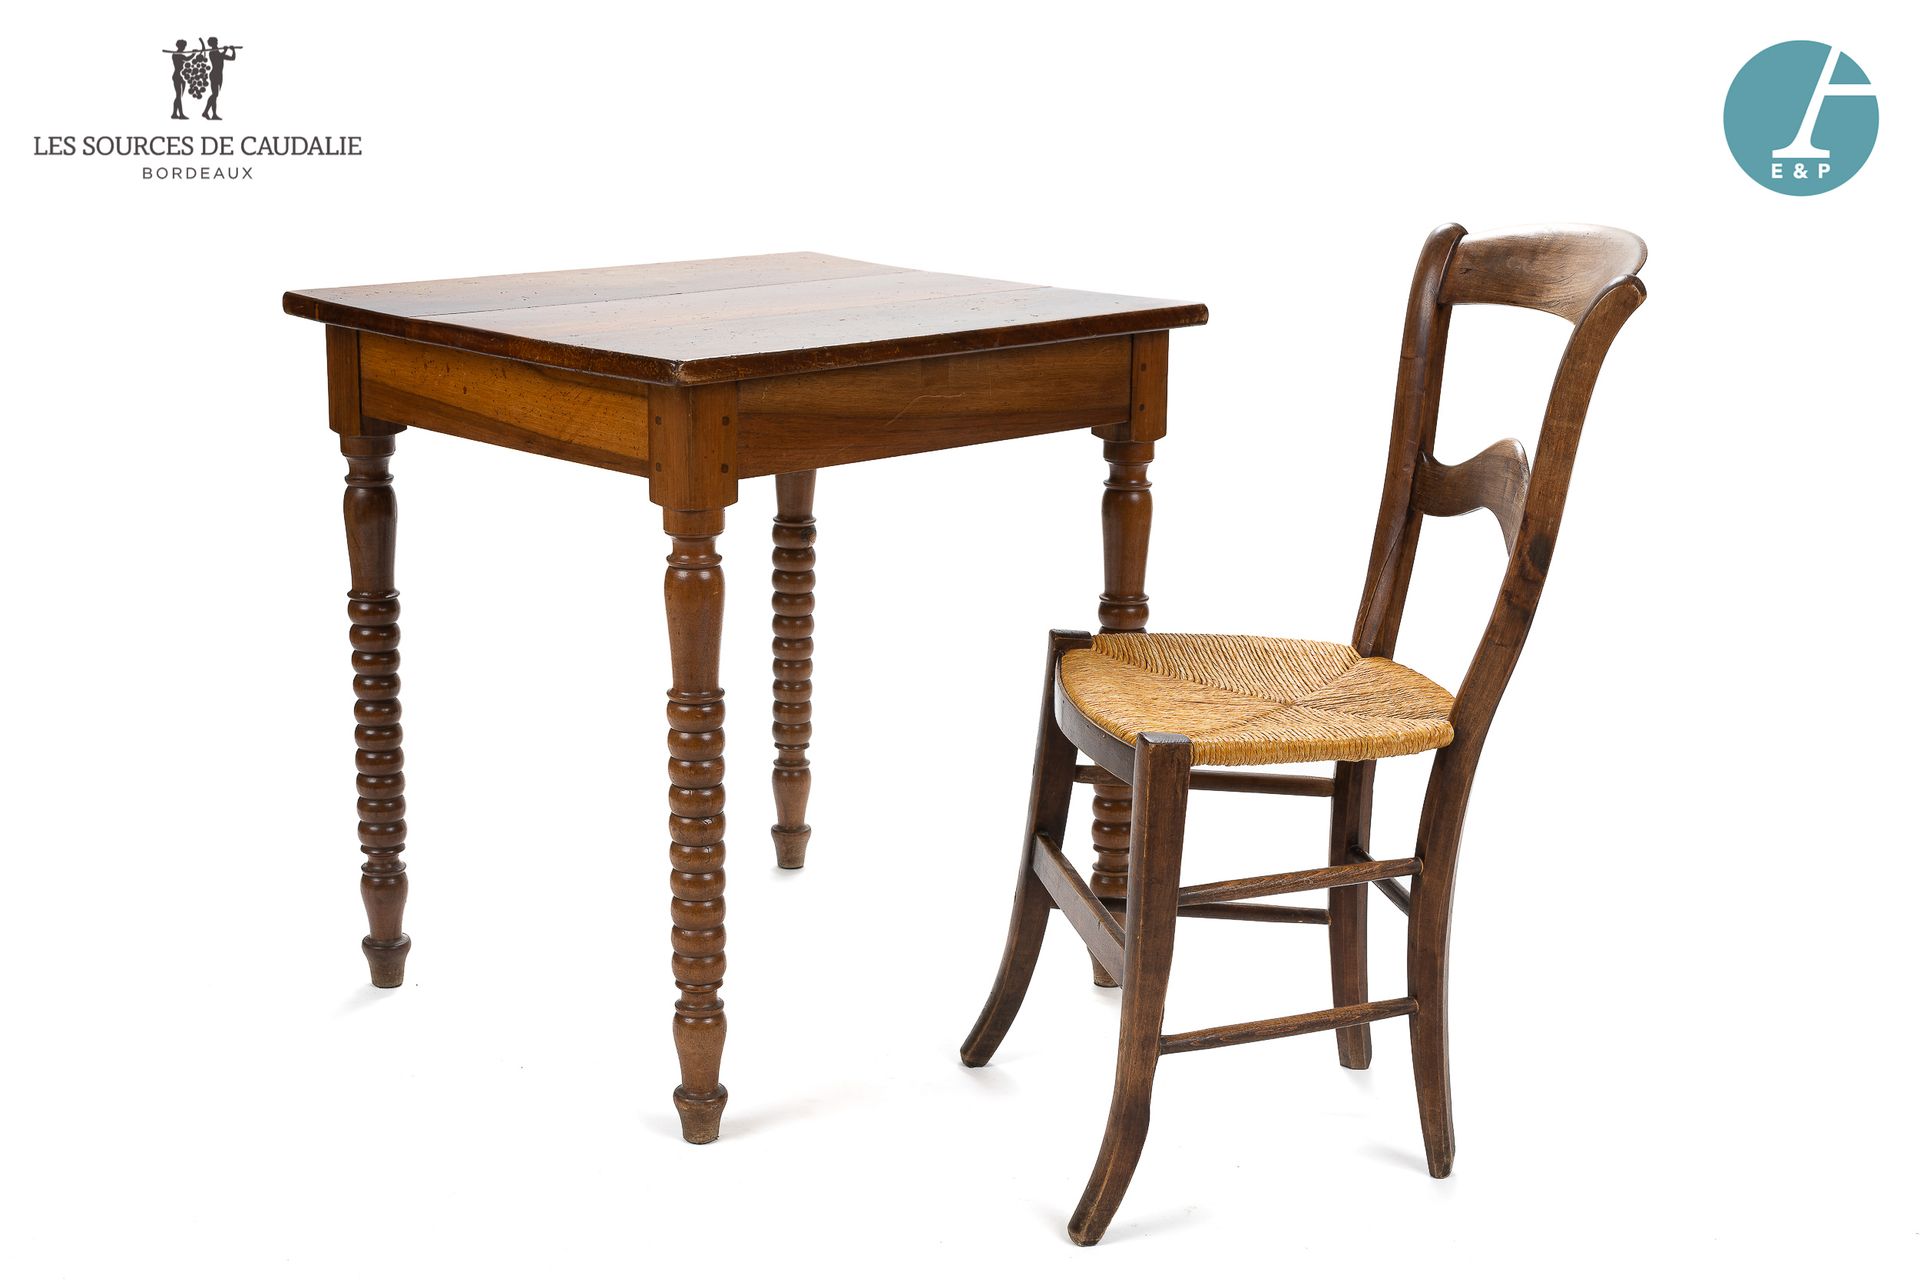 Null 从7号房间 "Le Vigneron "开始

拍品包括一张天然木桌，环形桌腿和一张天然木椅，草席。

桌子高：74厘米 - 宽：71.5厘米 - 深&hellip;